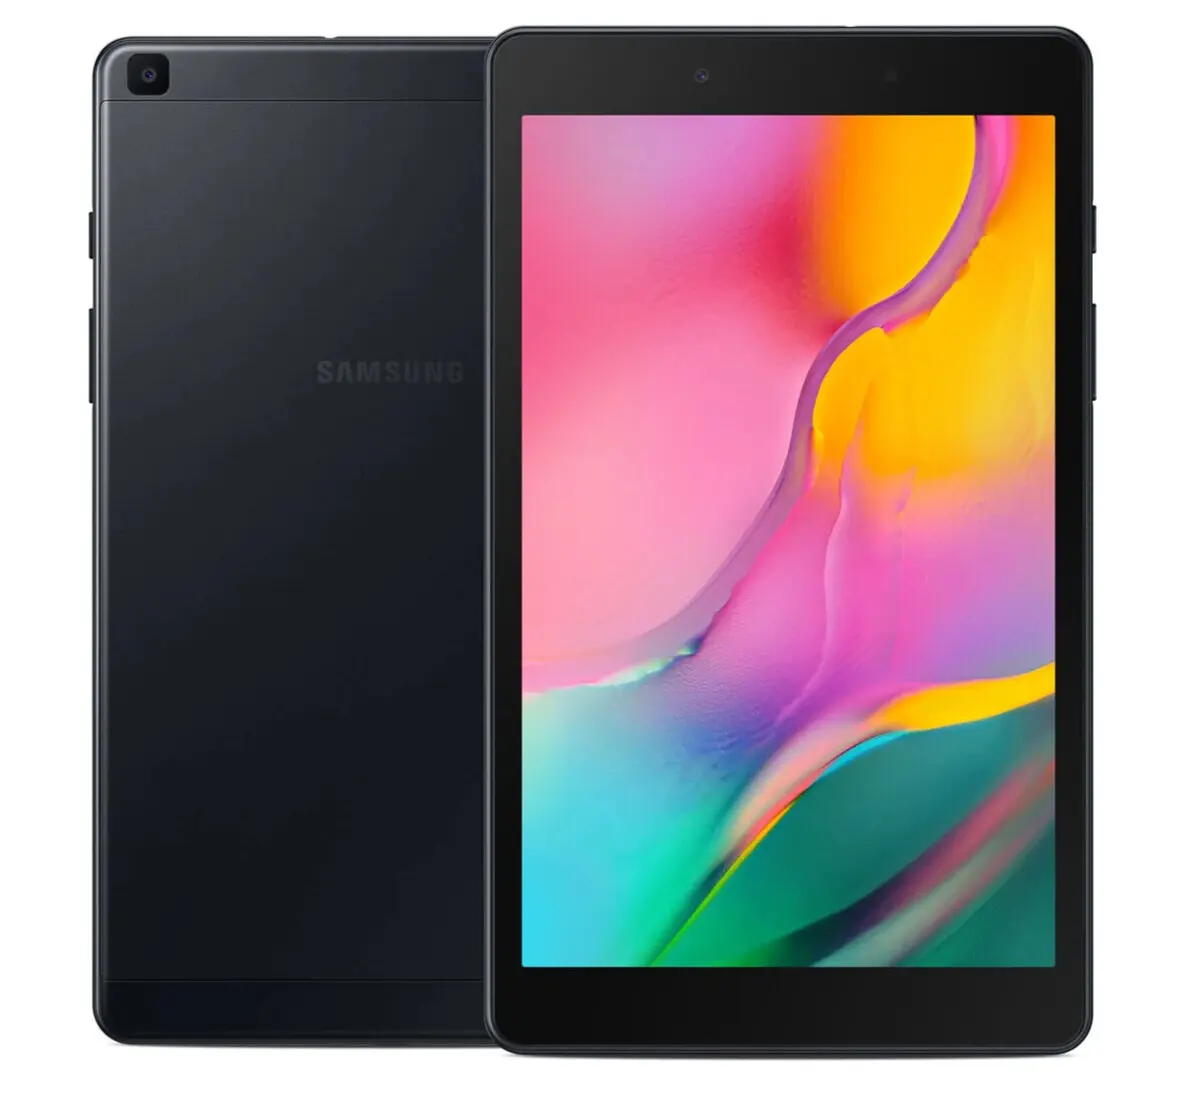 Samsung Galaxy Tab A 8.0 "2019 SM-T290 32GBブラックWiFiタブレットオープンボックス